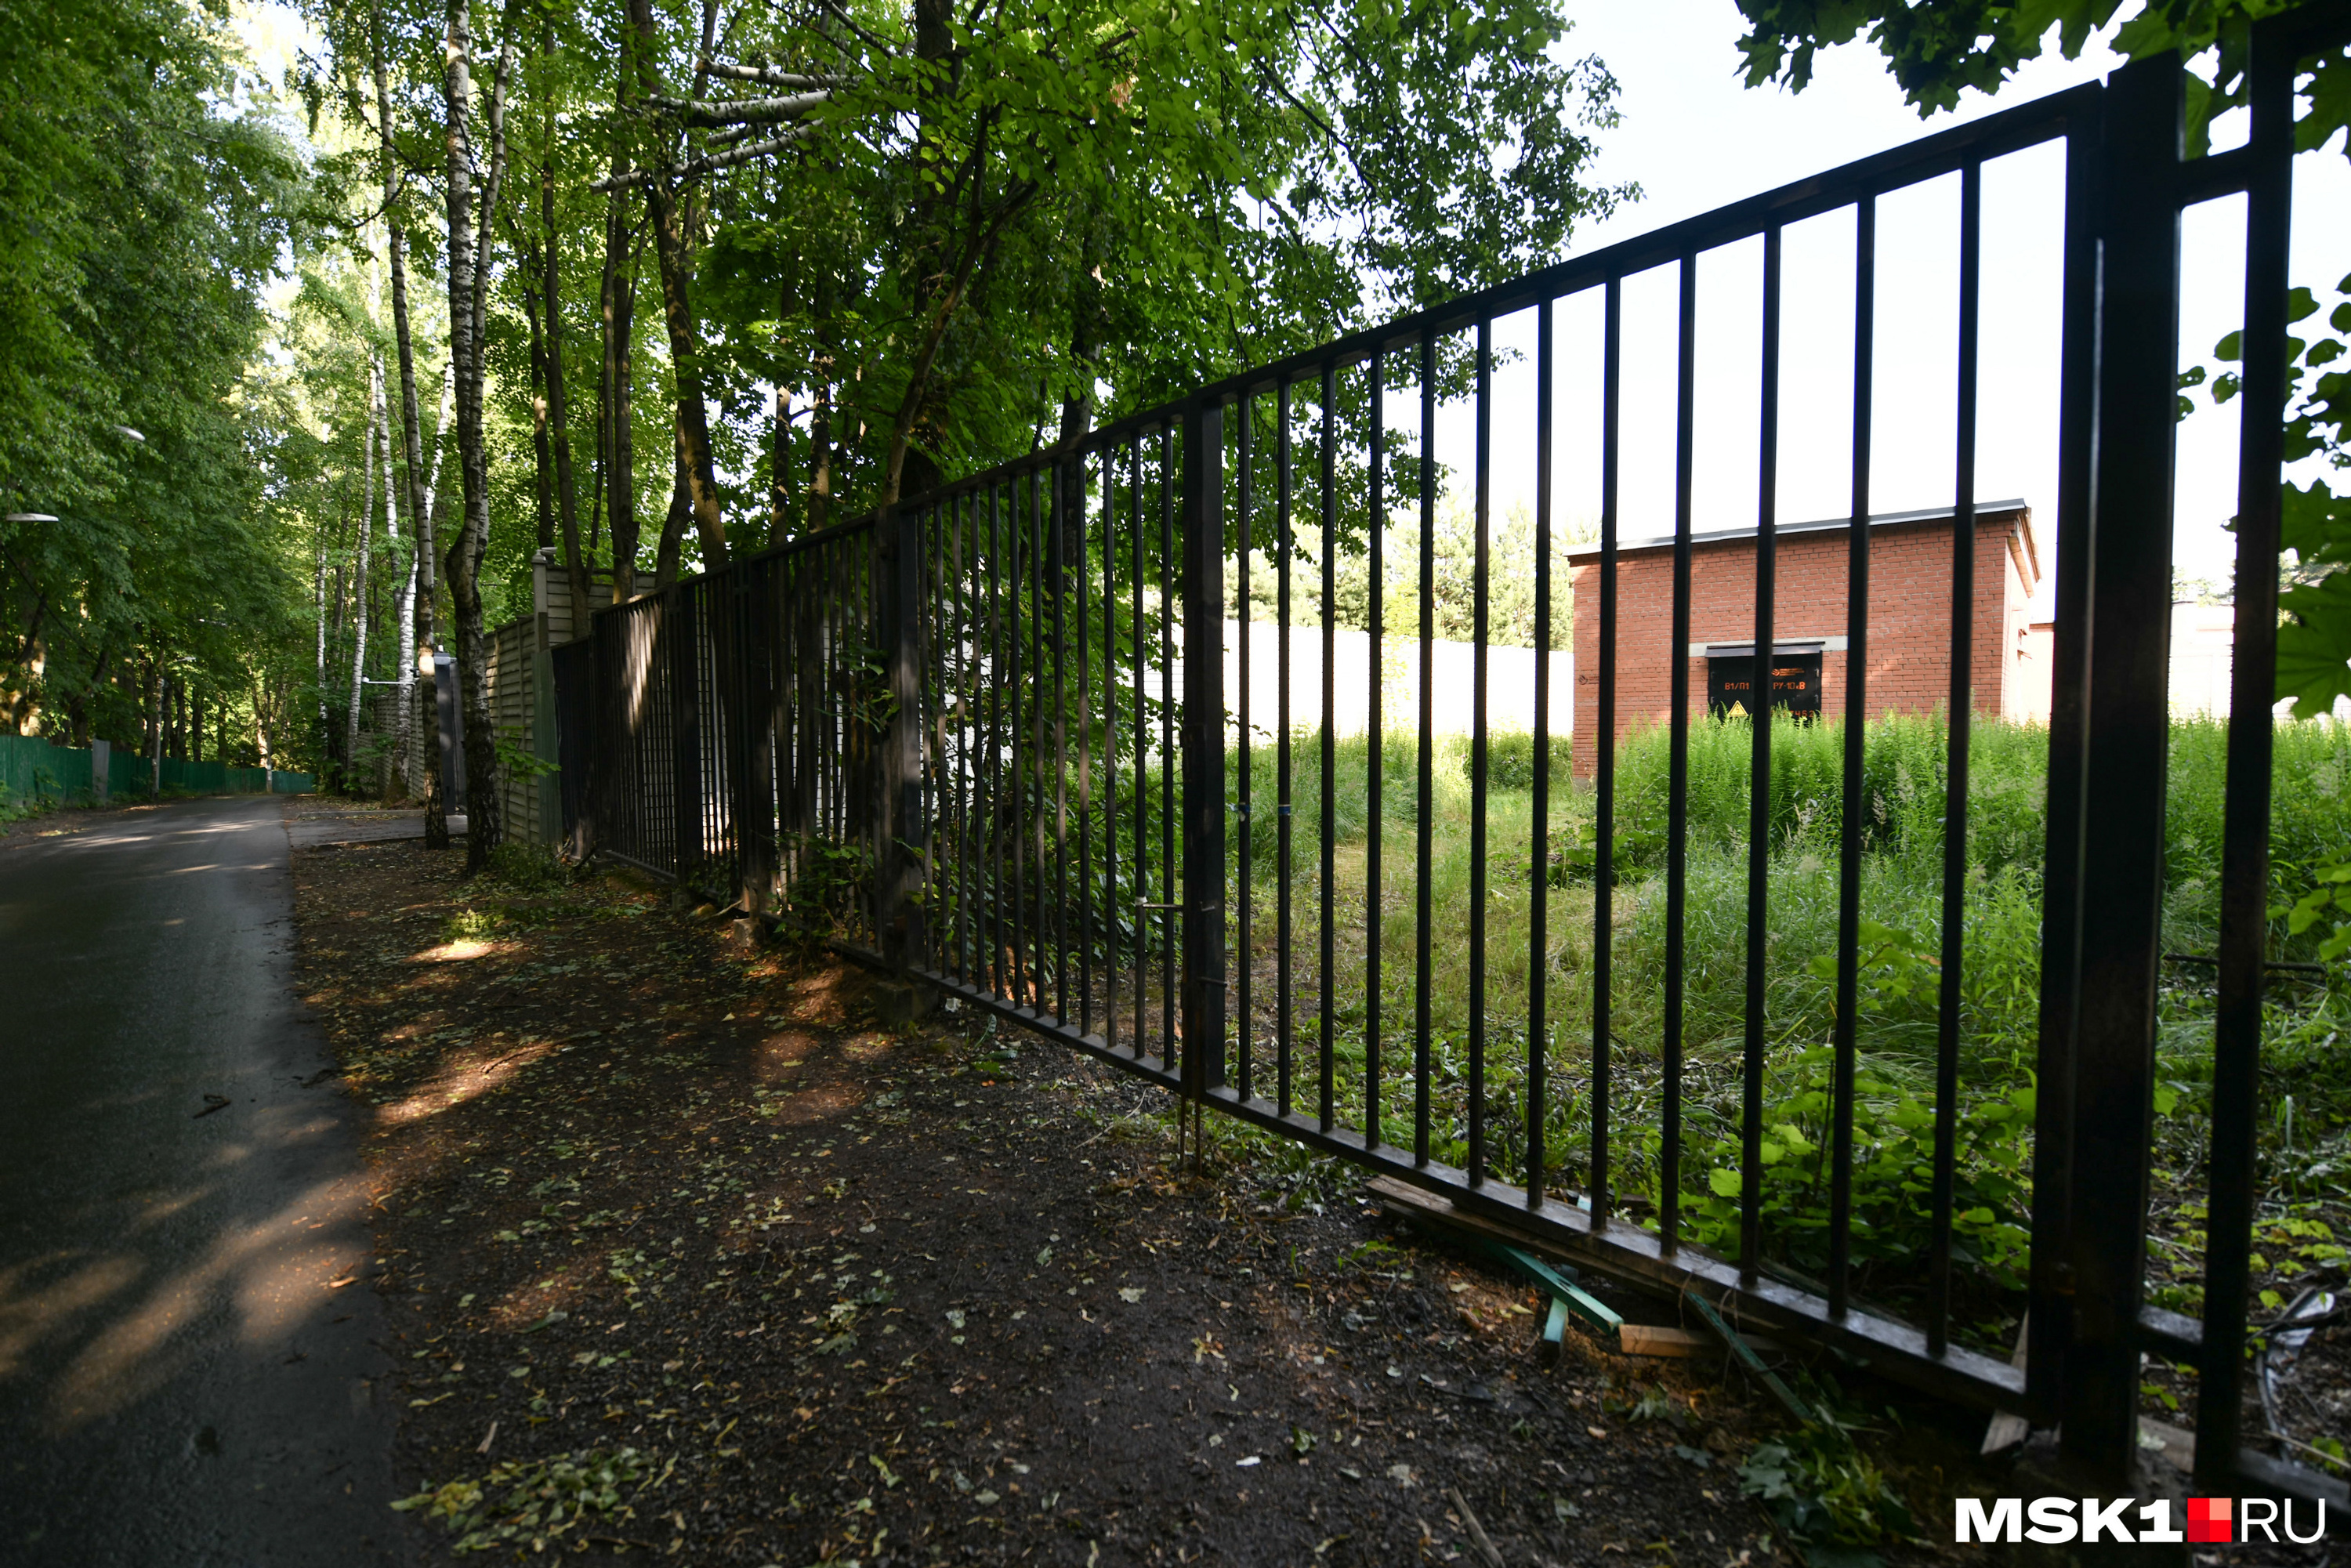 В нескольких метрах от домов олигархов всё выглядит намного беднее — стоит обычный забор, как в спальном районе любого российского города